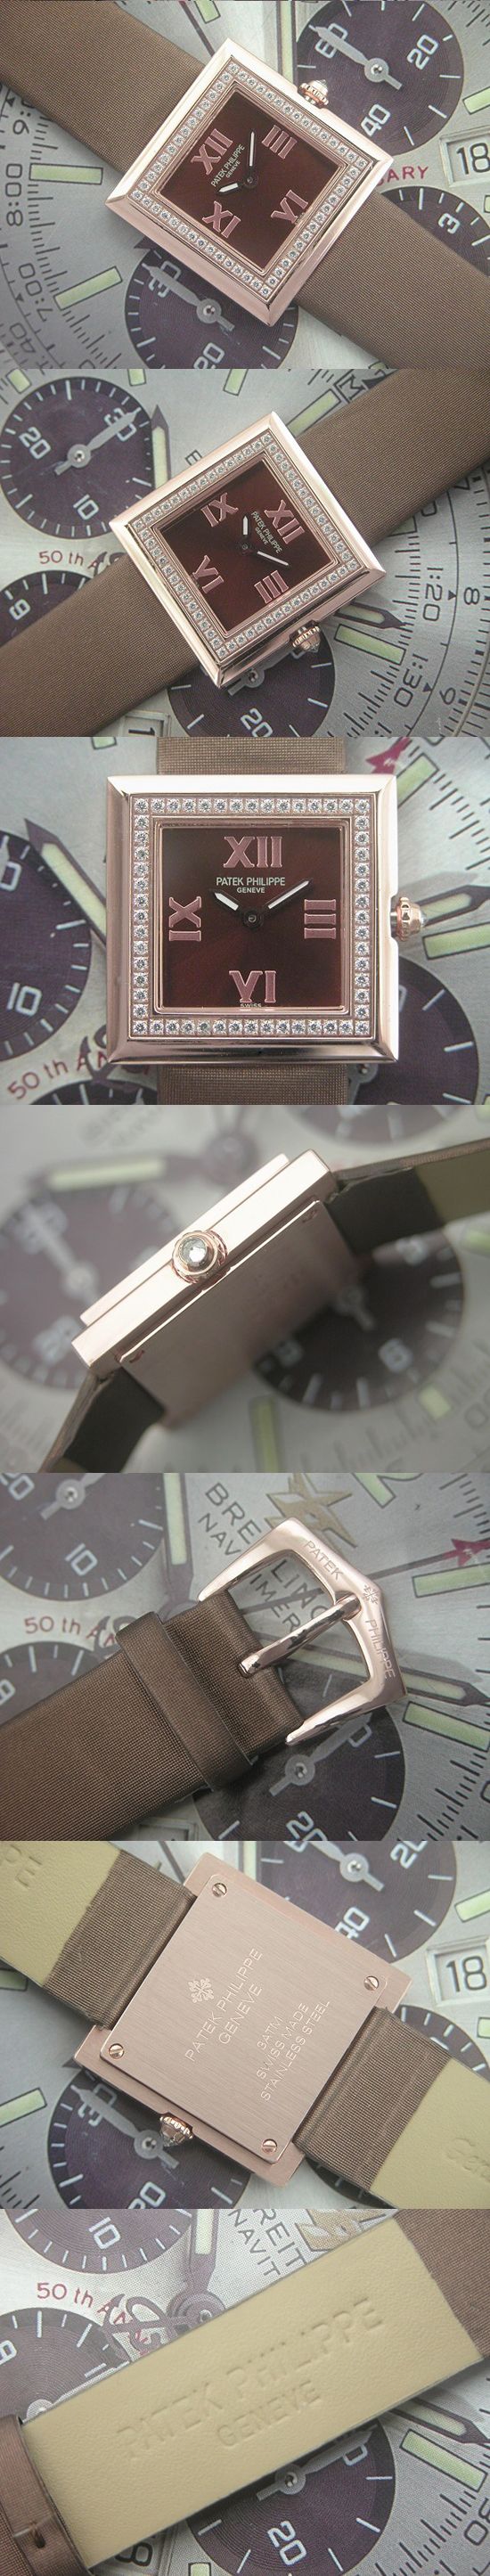 おしゃれなブランド時計がパテックフィリップ -ジュエリー-PATEK PHILIPPE-4869-ac-女性用を提供します.